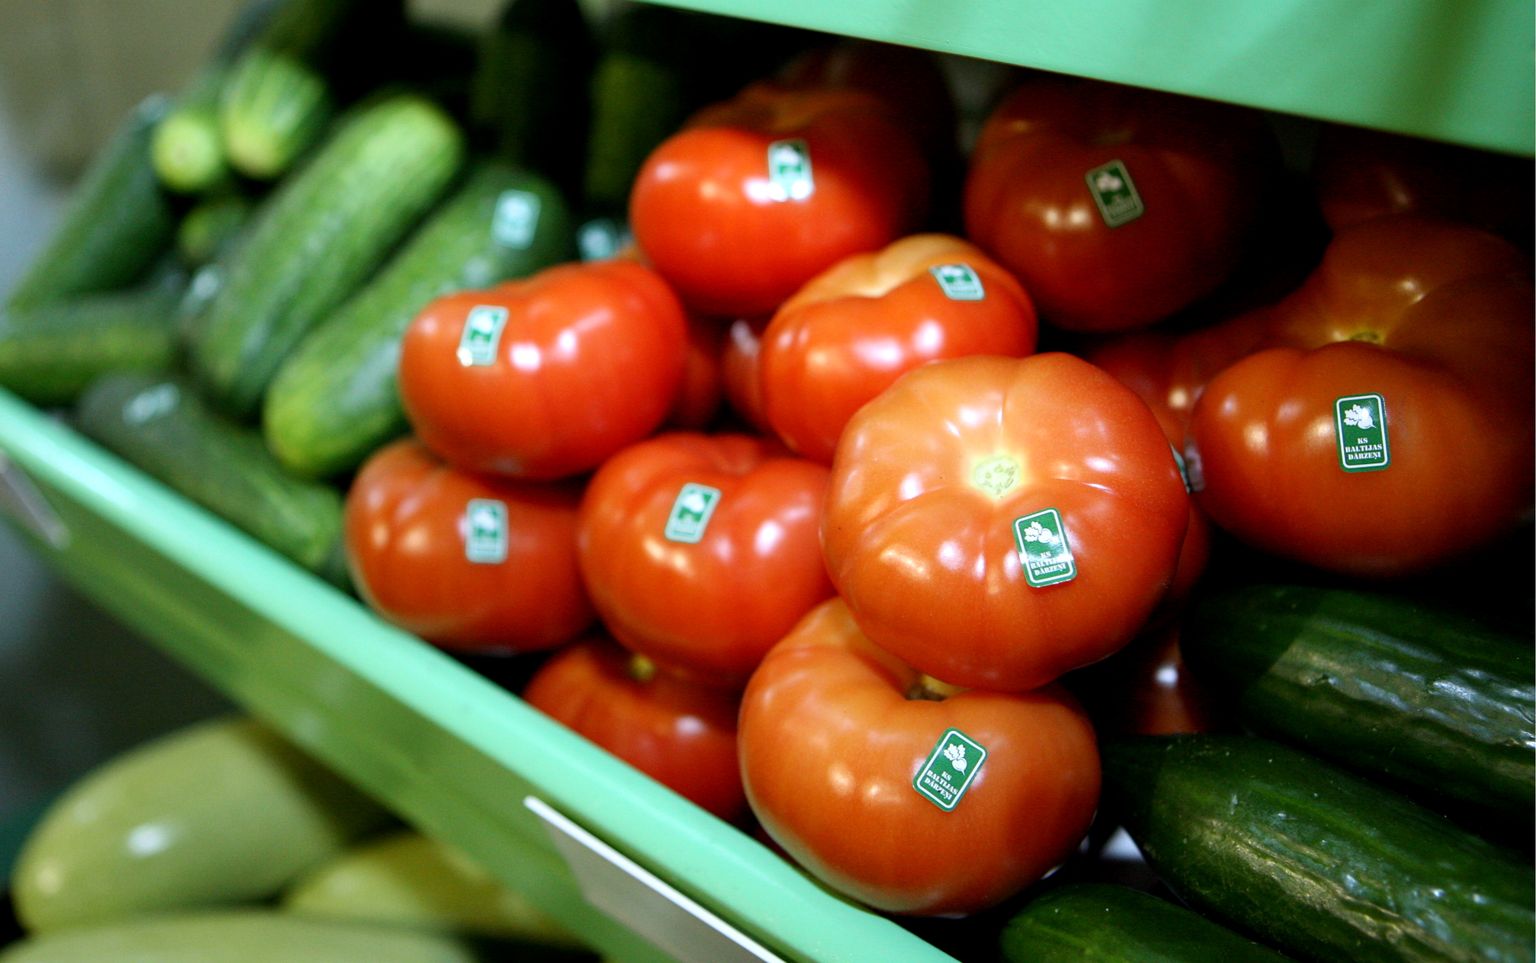 Gurķi un tomāti zemnieku saimniecībā "Ezerkauliņi" lielveikalu tīkla "Maxima", "Latvijā audzētu dārzeņu loģistikas" un "Ezerkauliņu" programmas "No ražas līdz ražai" atklāšanas preses konferencē.